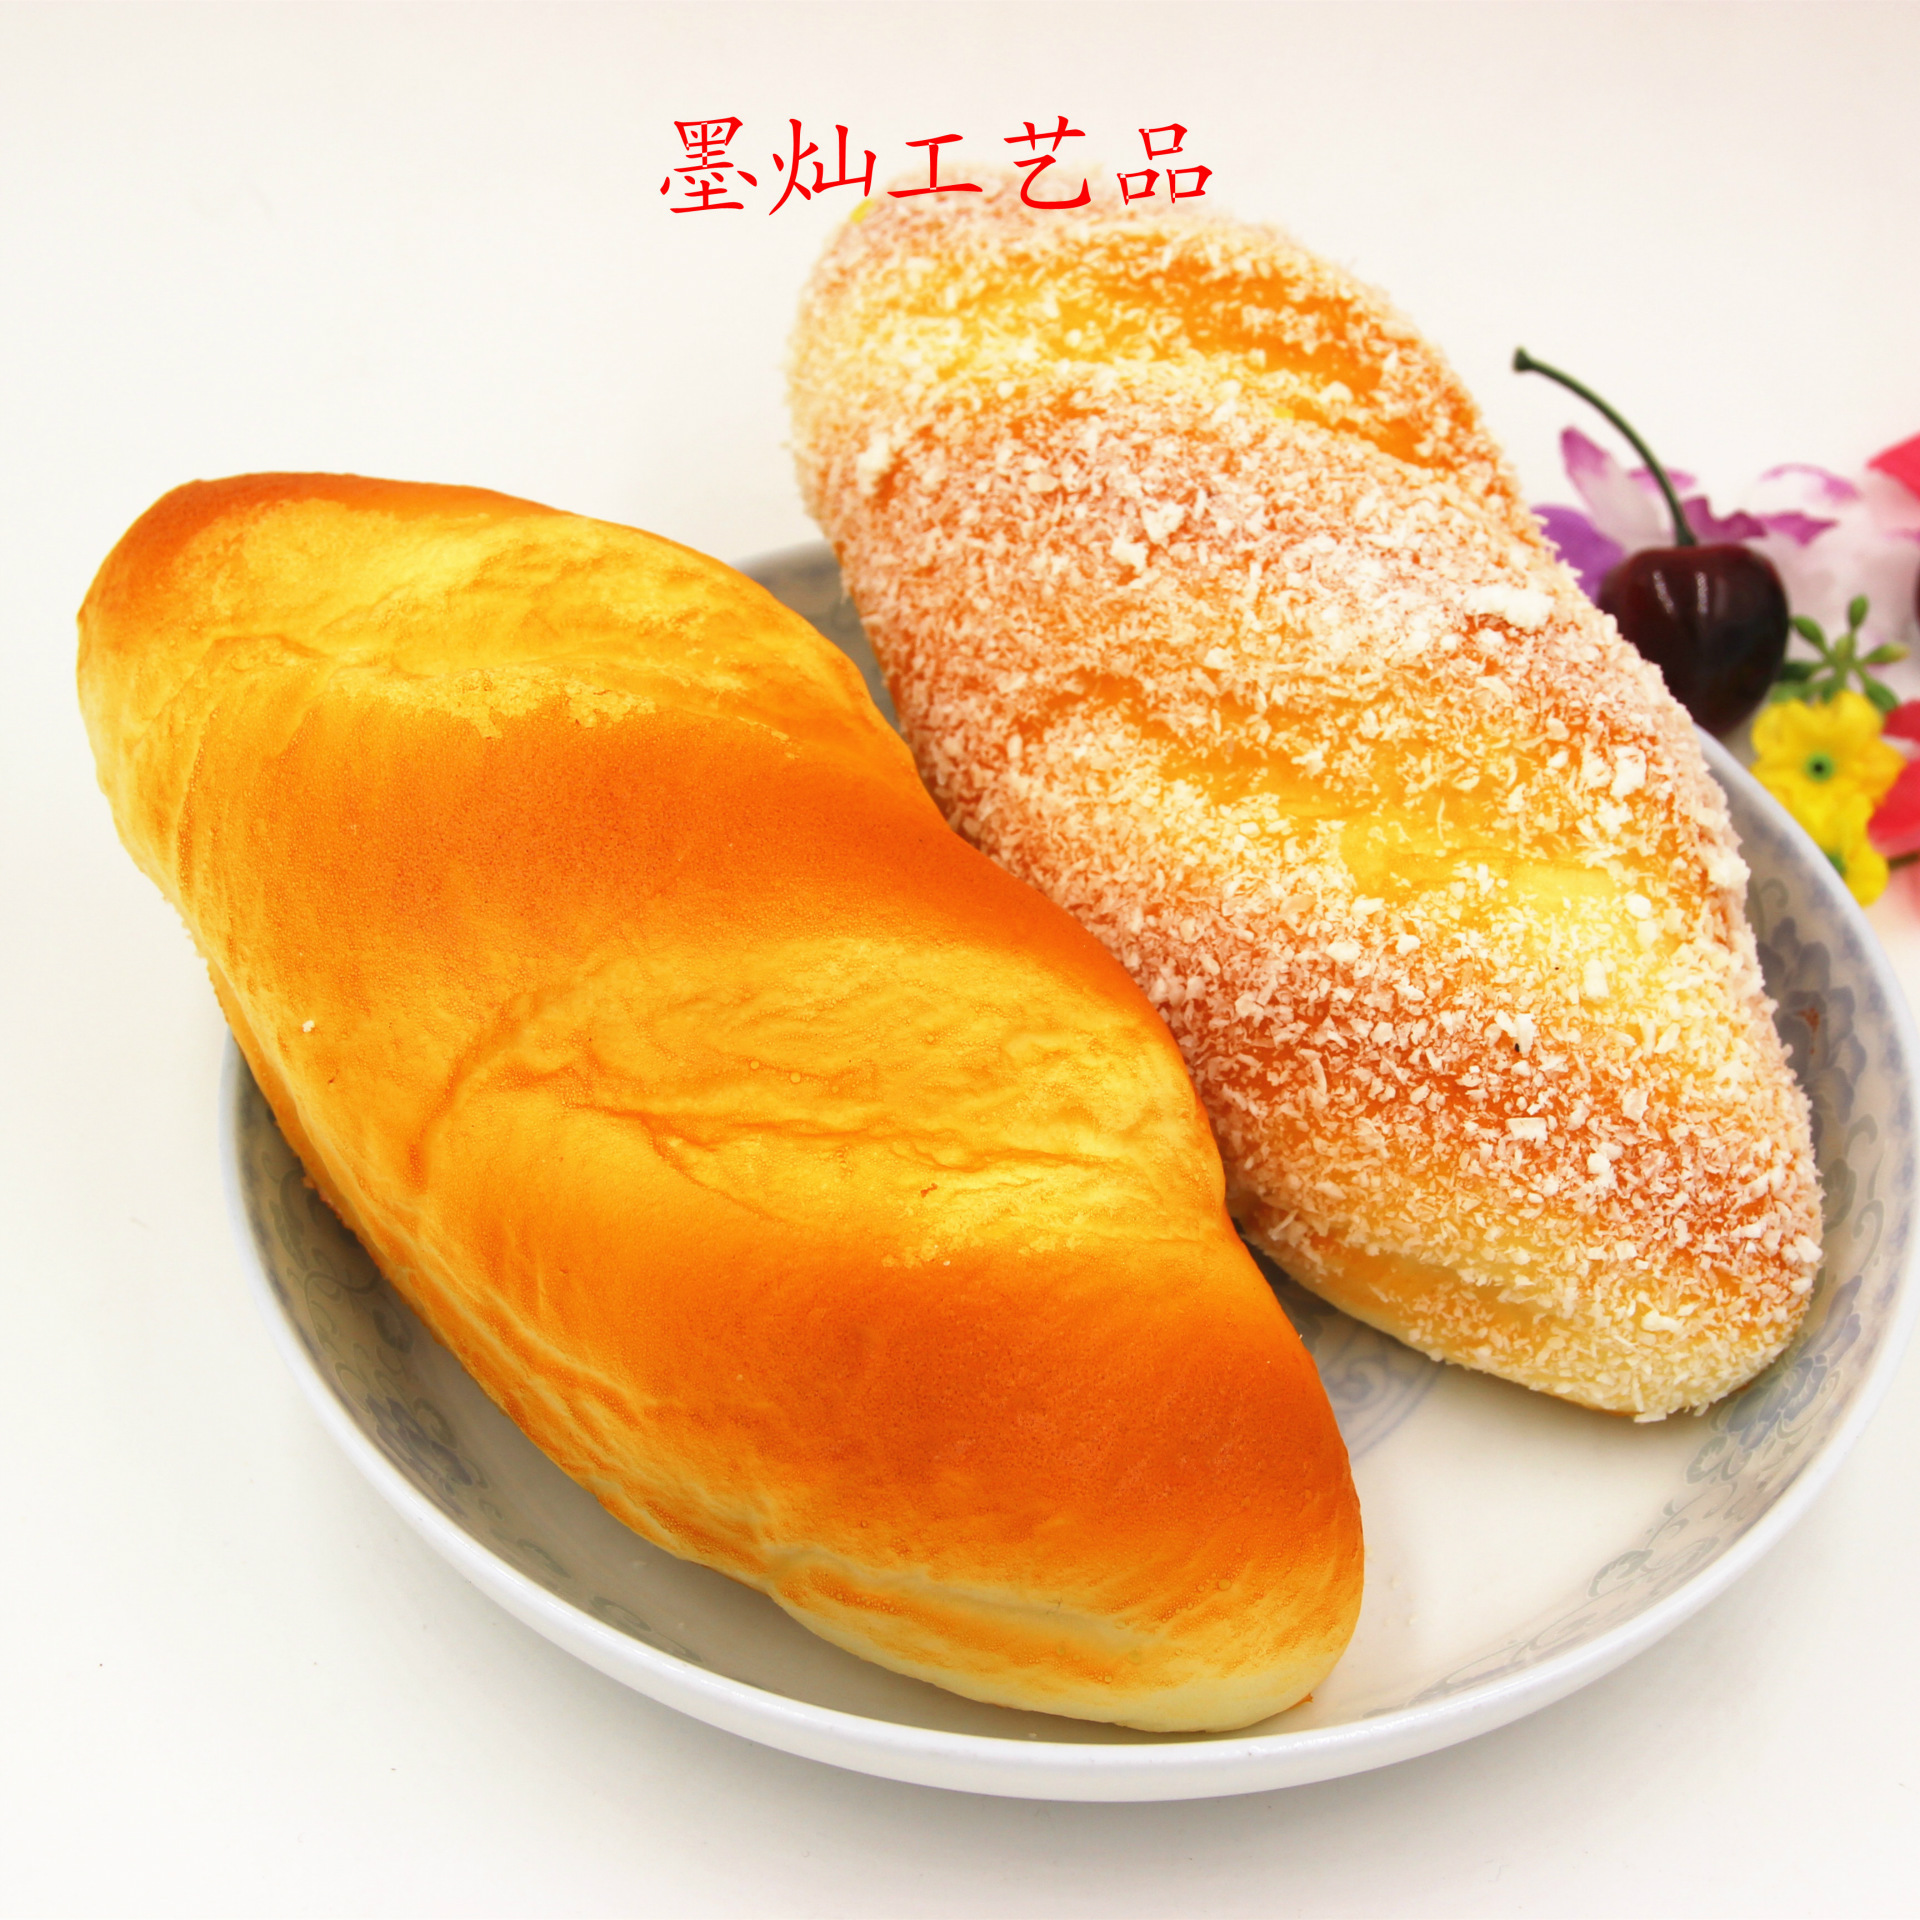 【金牛角面包】_金牛角面包_金娃美食的日志_美食天下